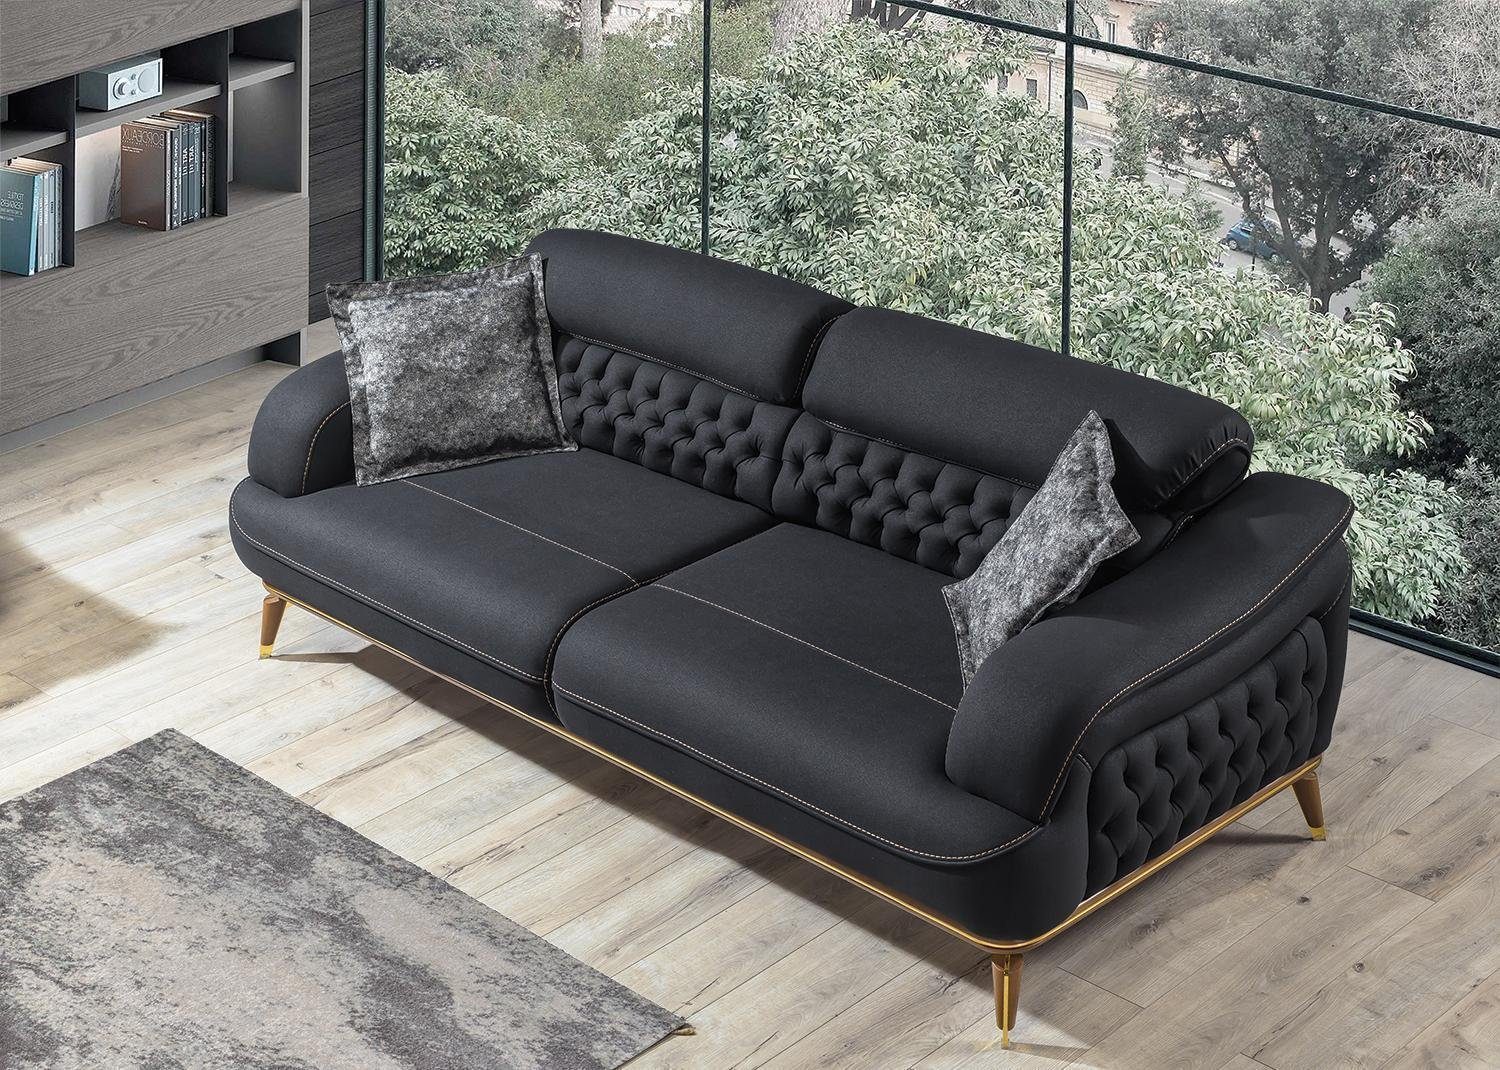 JVmoebel Sofa Luxus Dreisitzer Sofa 3 Sitz Möbel Sofas Schwarz Couch Stoff Couchen, 1 Teile, Made in Europa